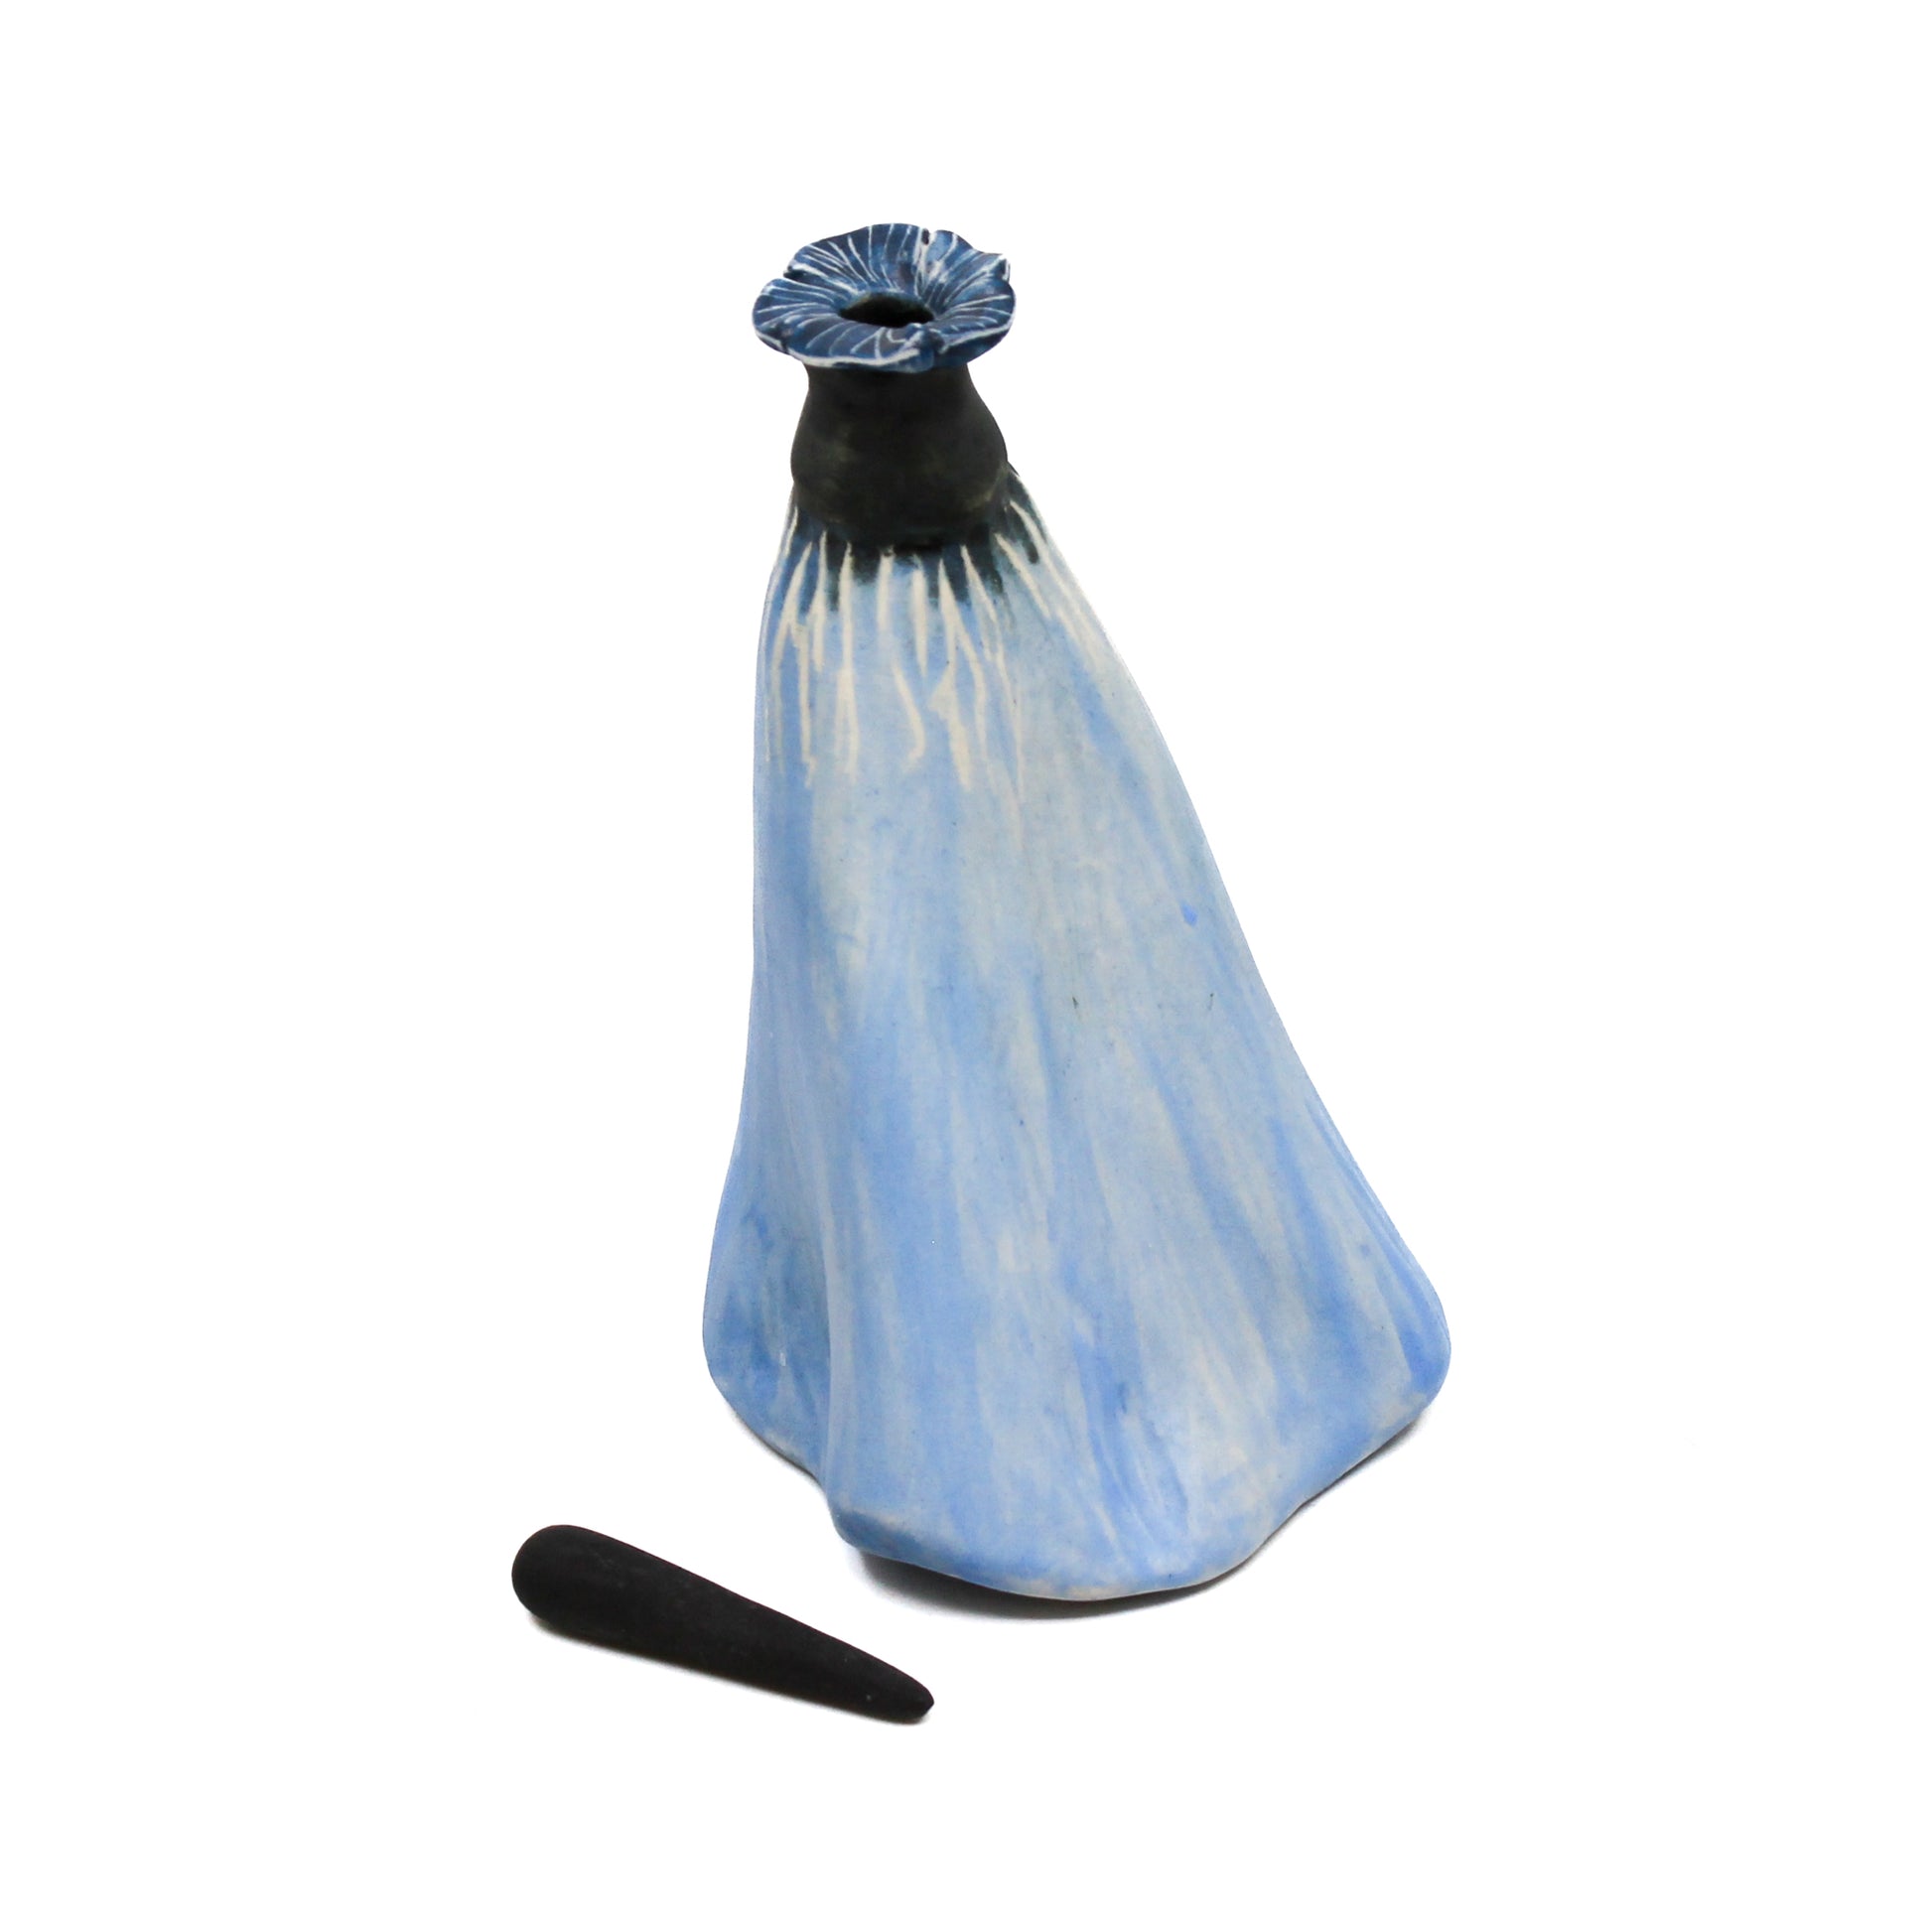 Light blue pod bottle with black stopper